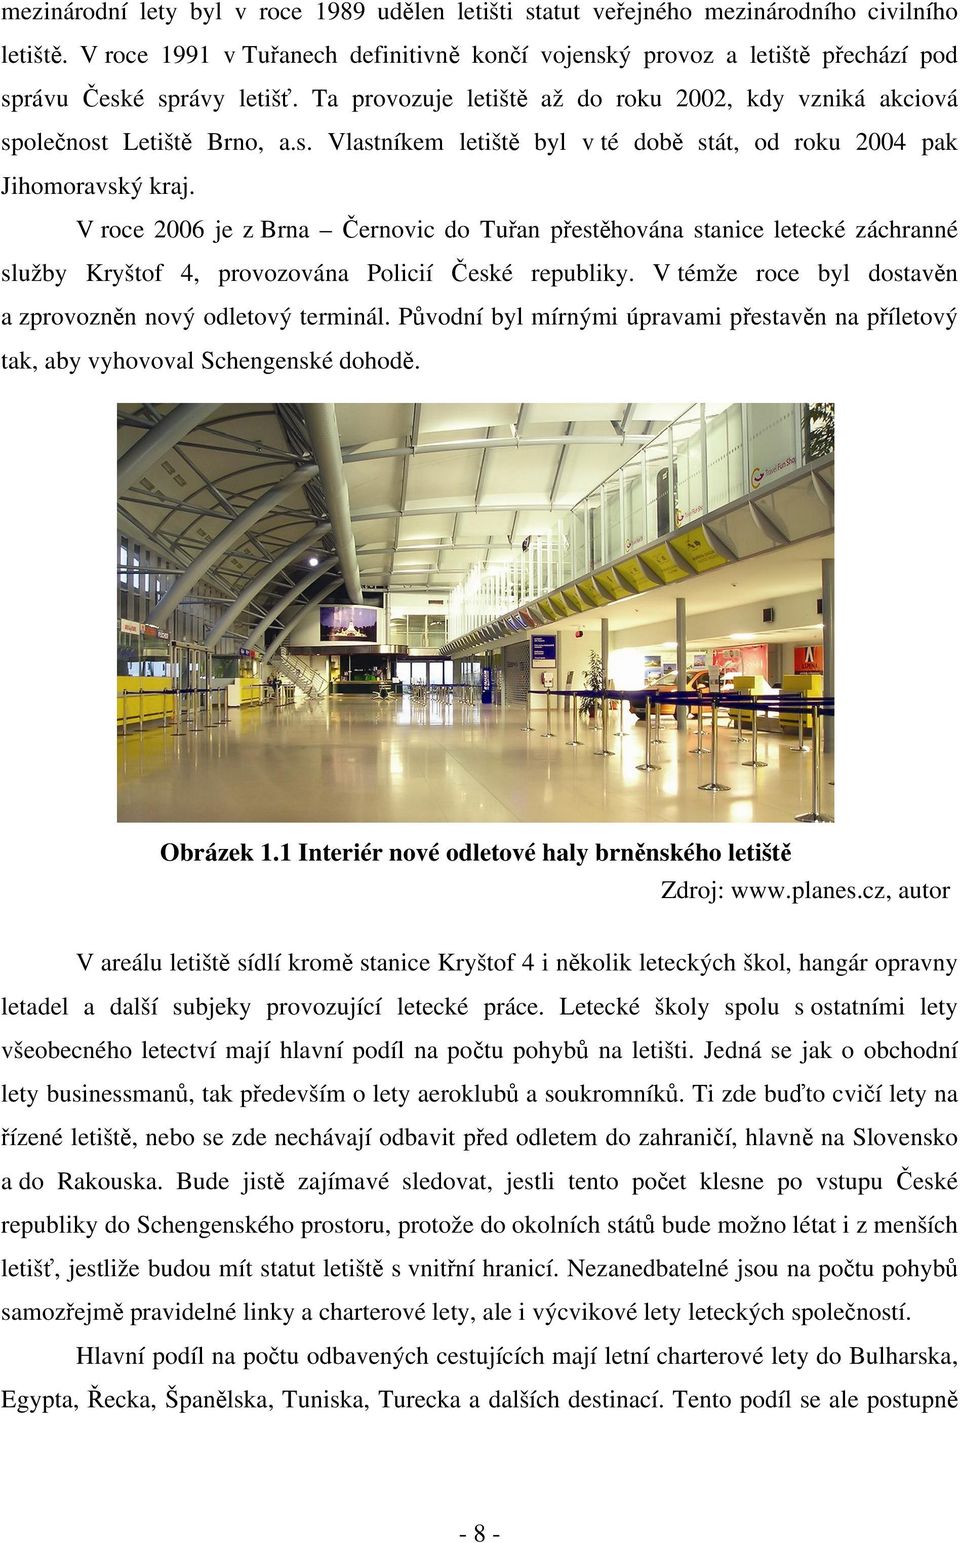 V roce 2006 je z Brna Černovic do Tuřan přestěhována stanice letecké záchranné služby Kryštof 4, provozována Policií České republiky. V témže roce byl dostavěn a zprovozněn nový odletový terminál.